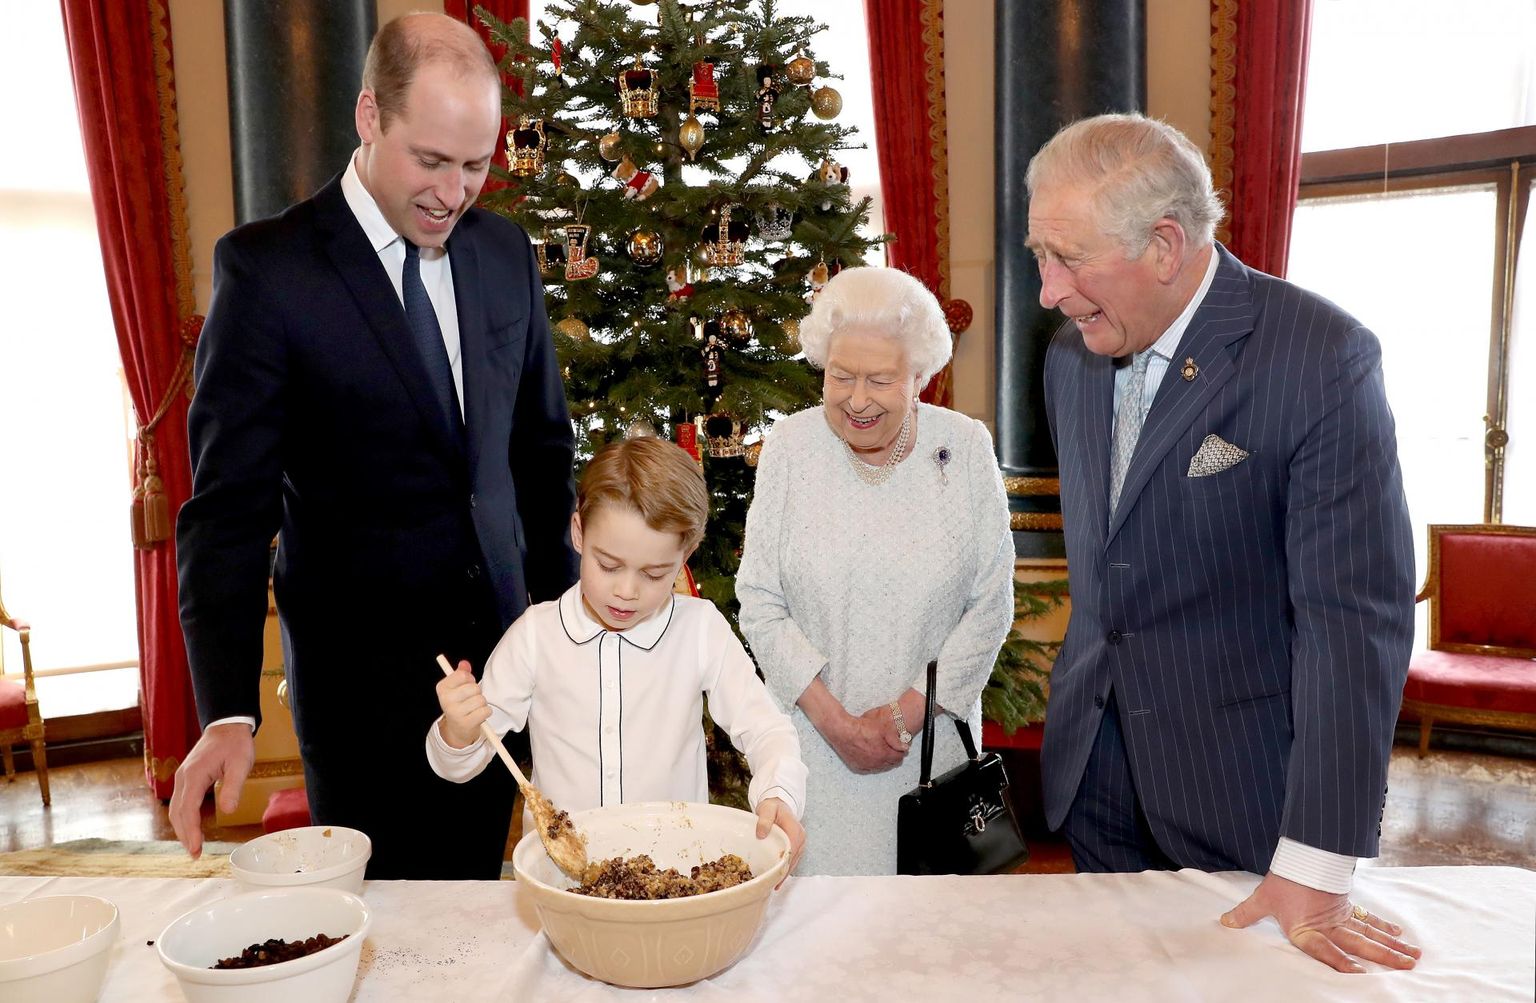 Jõulupuding on Suurbritannias aukohal. Prints William, kuninganna Elizabeth II ja prints Charles vaatavad lõbustatult, kuidas prints George pudingut segab.